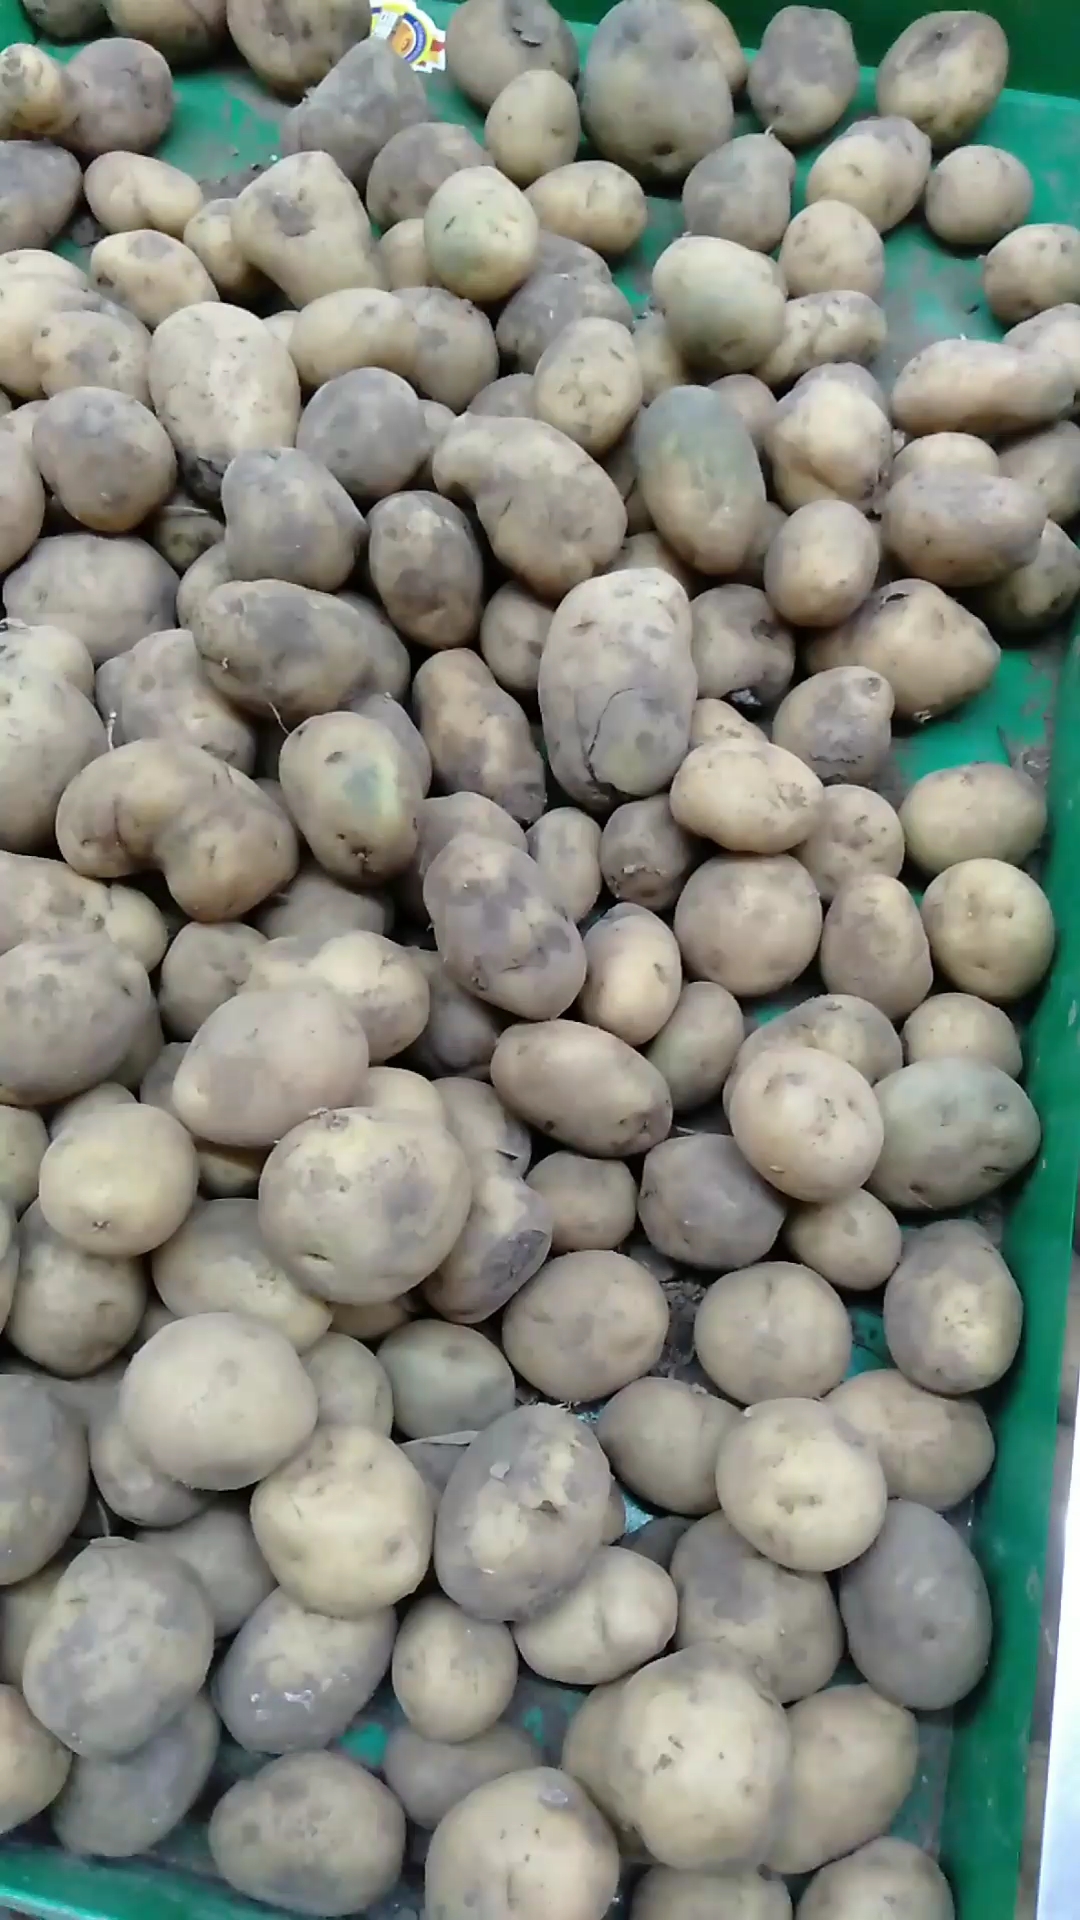 现在的商家看看这土豆都这么小,还发绿了,标价2元,大家说值吗?